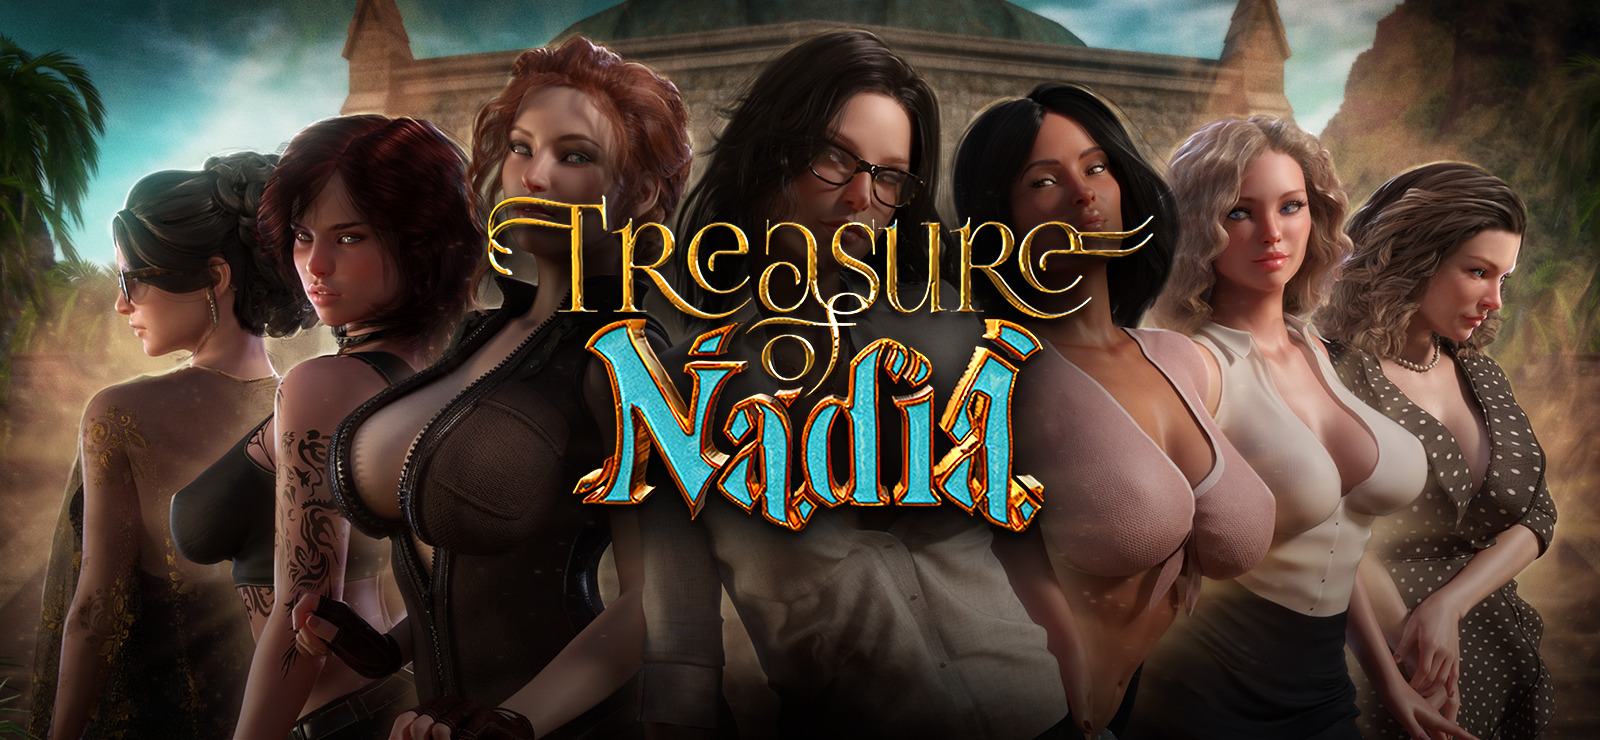 Treasure of nadia download